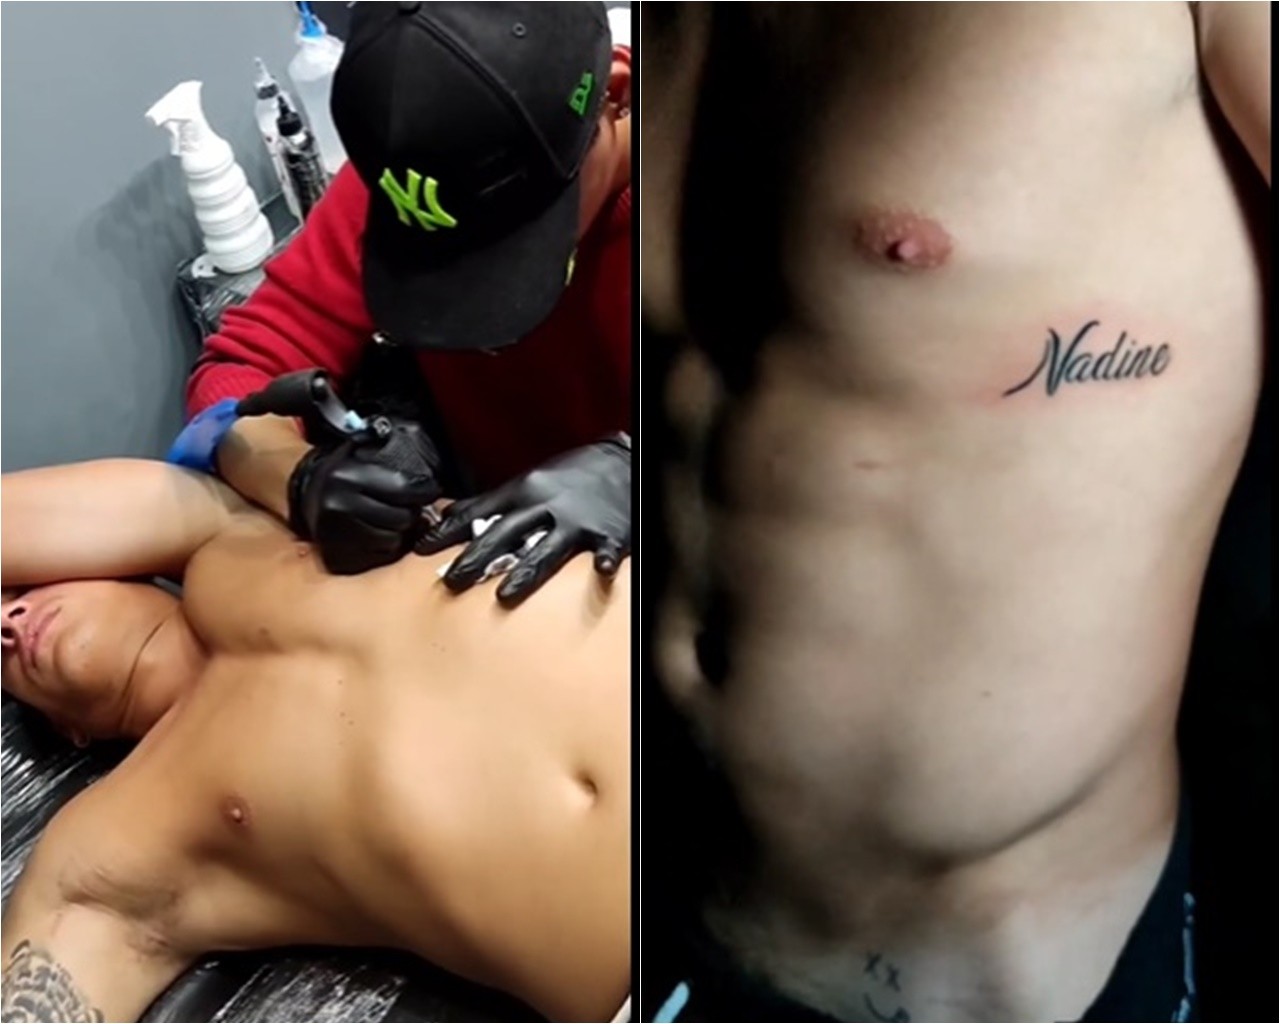 Tiago Ramos, ex da mãe de Neymar, fez tatuagem com nome de Nadine (Foto: Reprodução/Instagram)